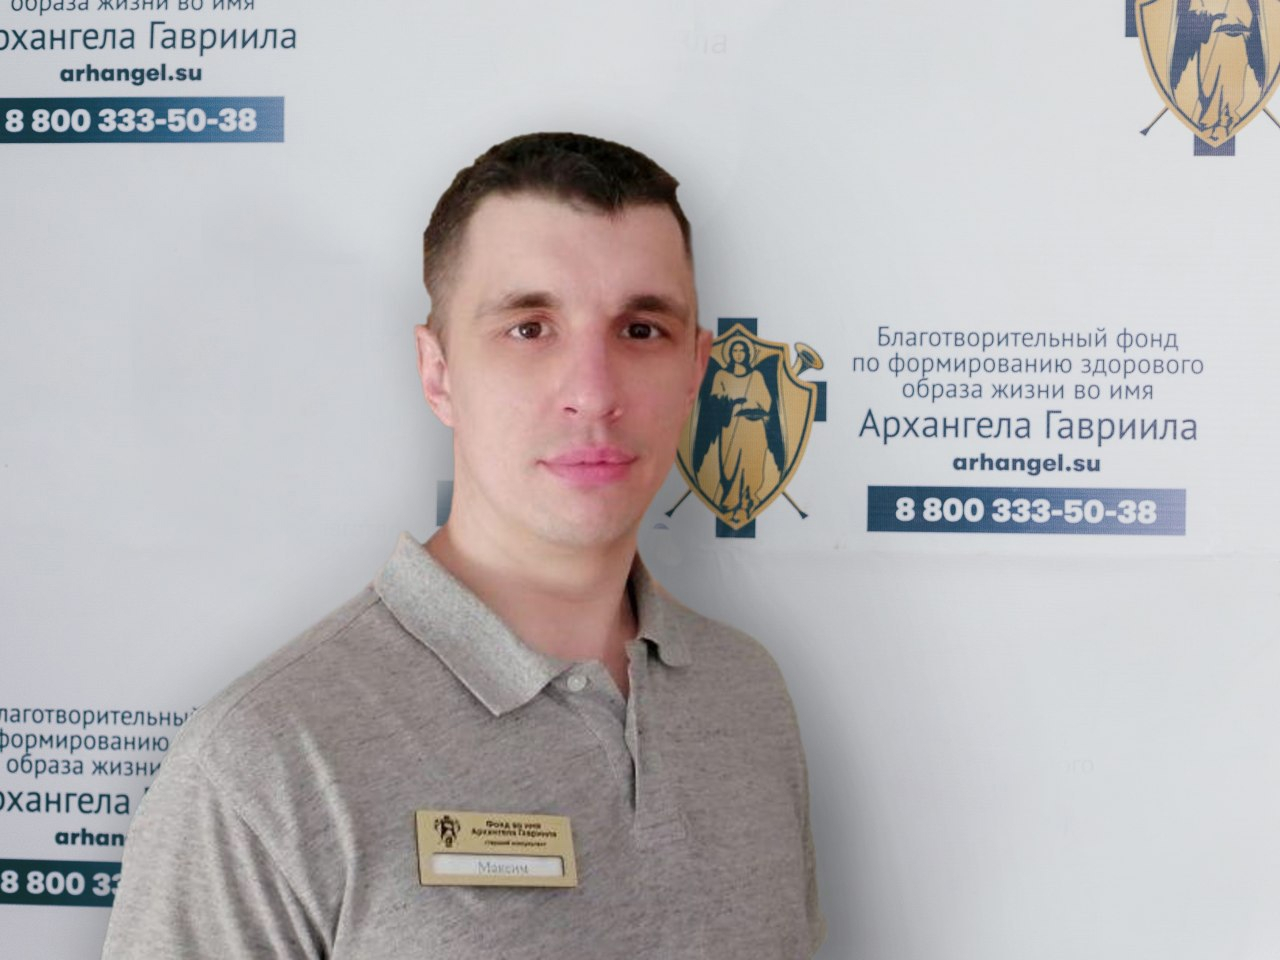 В Ярославле при странных обстоятельствах пропал директор благотворительного фонда